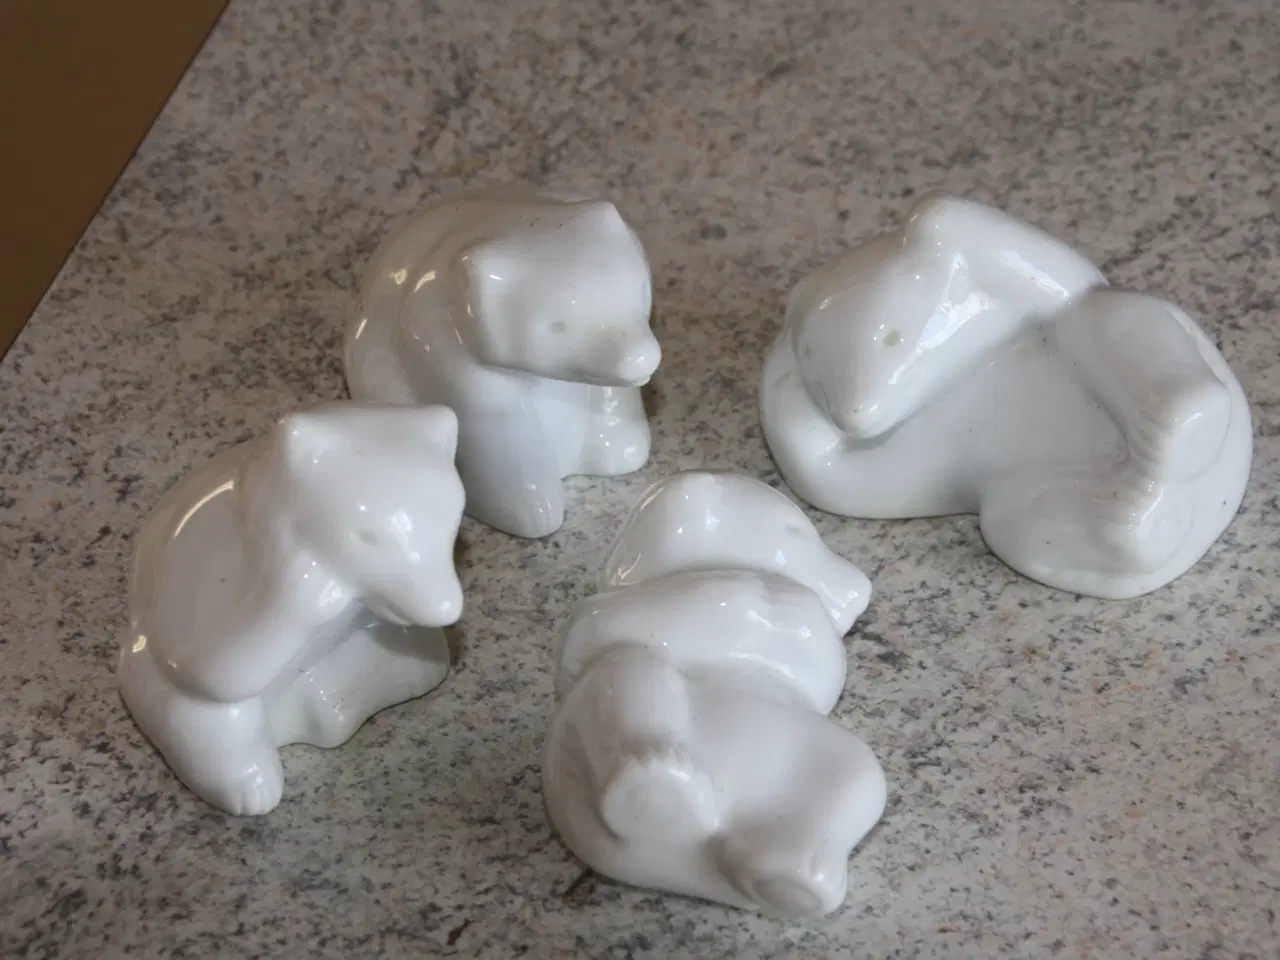 Billede 2 - Isbjørne keramik 4 stk., pris 100 kr. for alle 4 